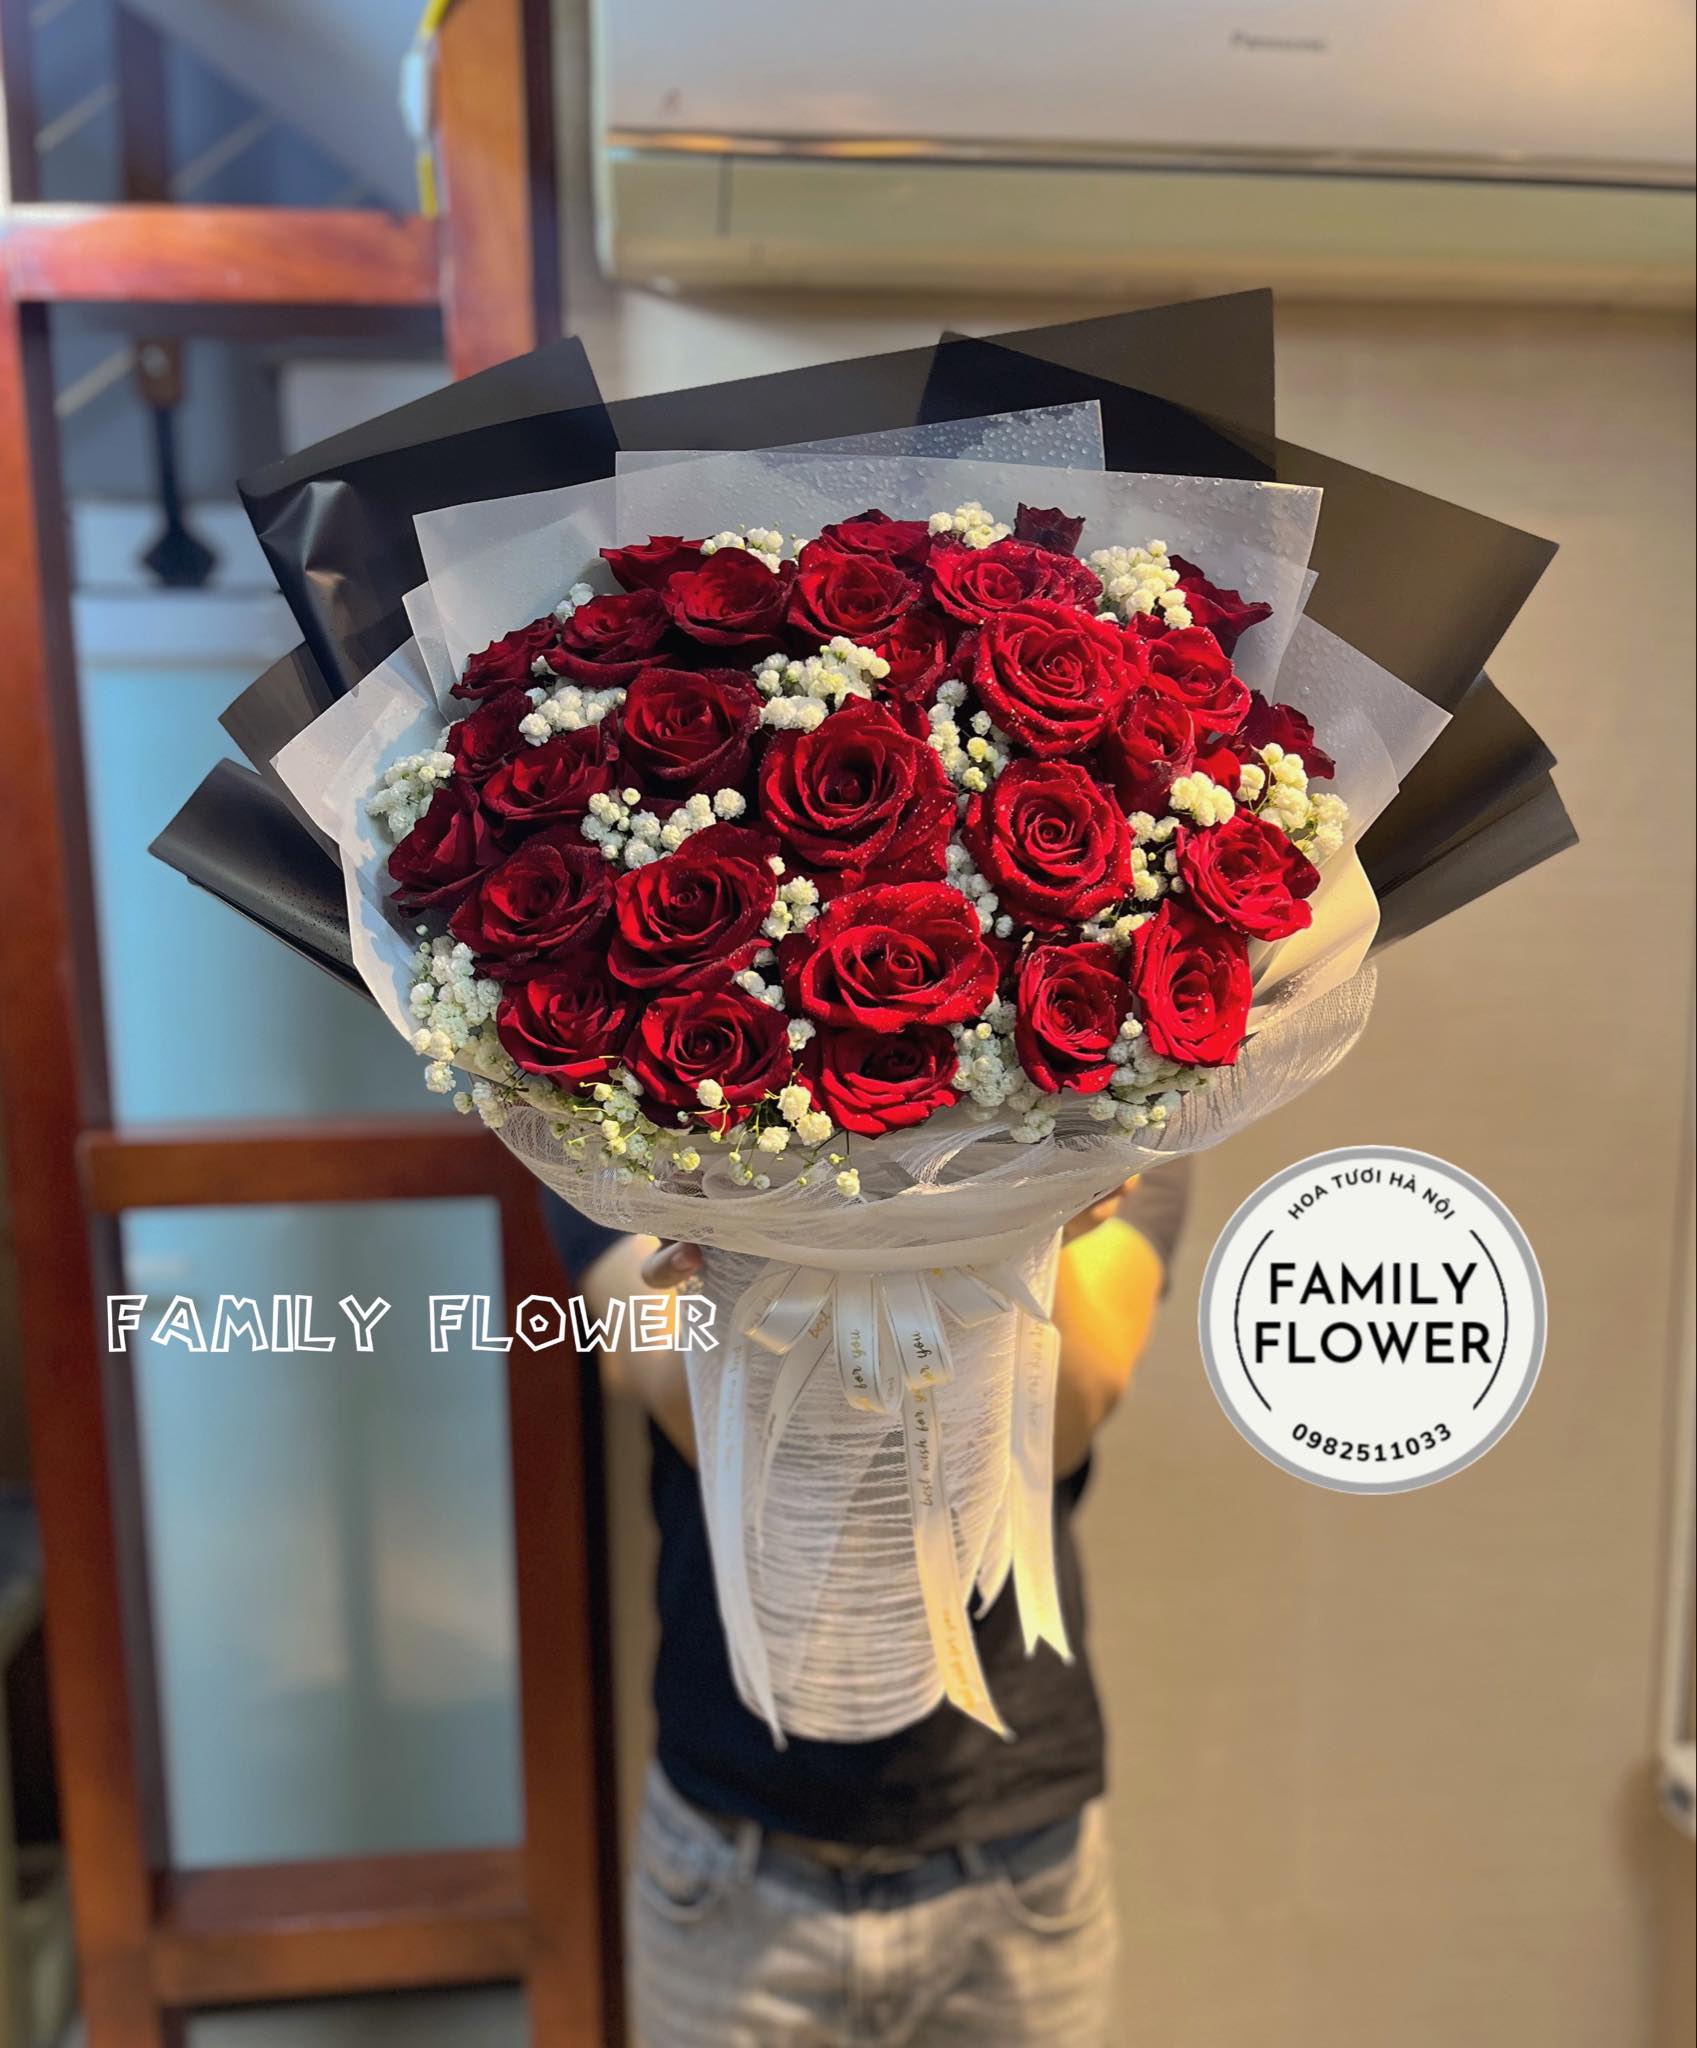 Các mẫu hoa dành tặng cho người yêu, mẹ, vợ nhân dịp Valentine 14/2 hay ngày quốc tế phụ nữ Việt Nam 8/3 tại Hà Nội